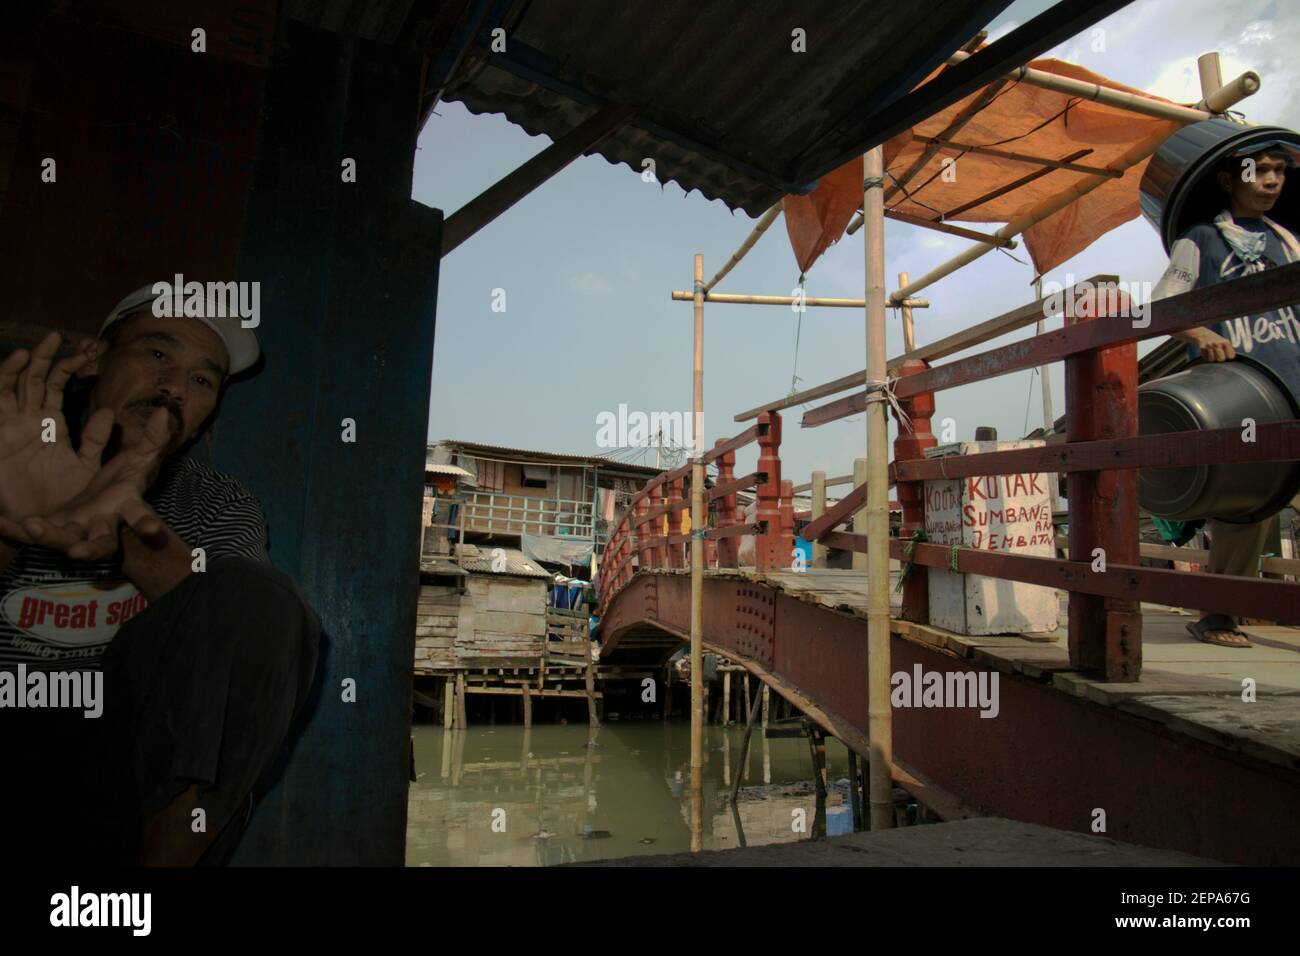 Portrait d'un homme comme il se détend à côté d'un pont sur un village populairement connu sous le nom de Luar Batang, sur l'estuaire de la rivière Ciliwung, près du port traditionnel de Sunda Kelapa dans la zone côtière de Jakarta, Indonésie (2008). Banque D'Images